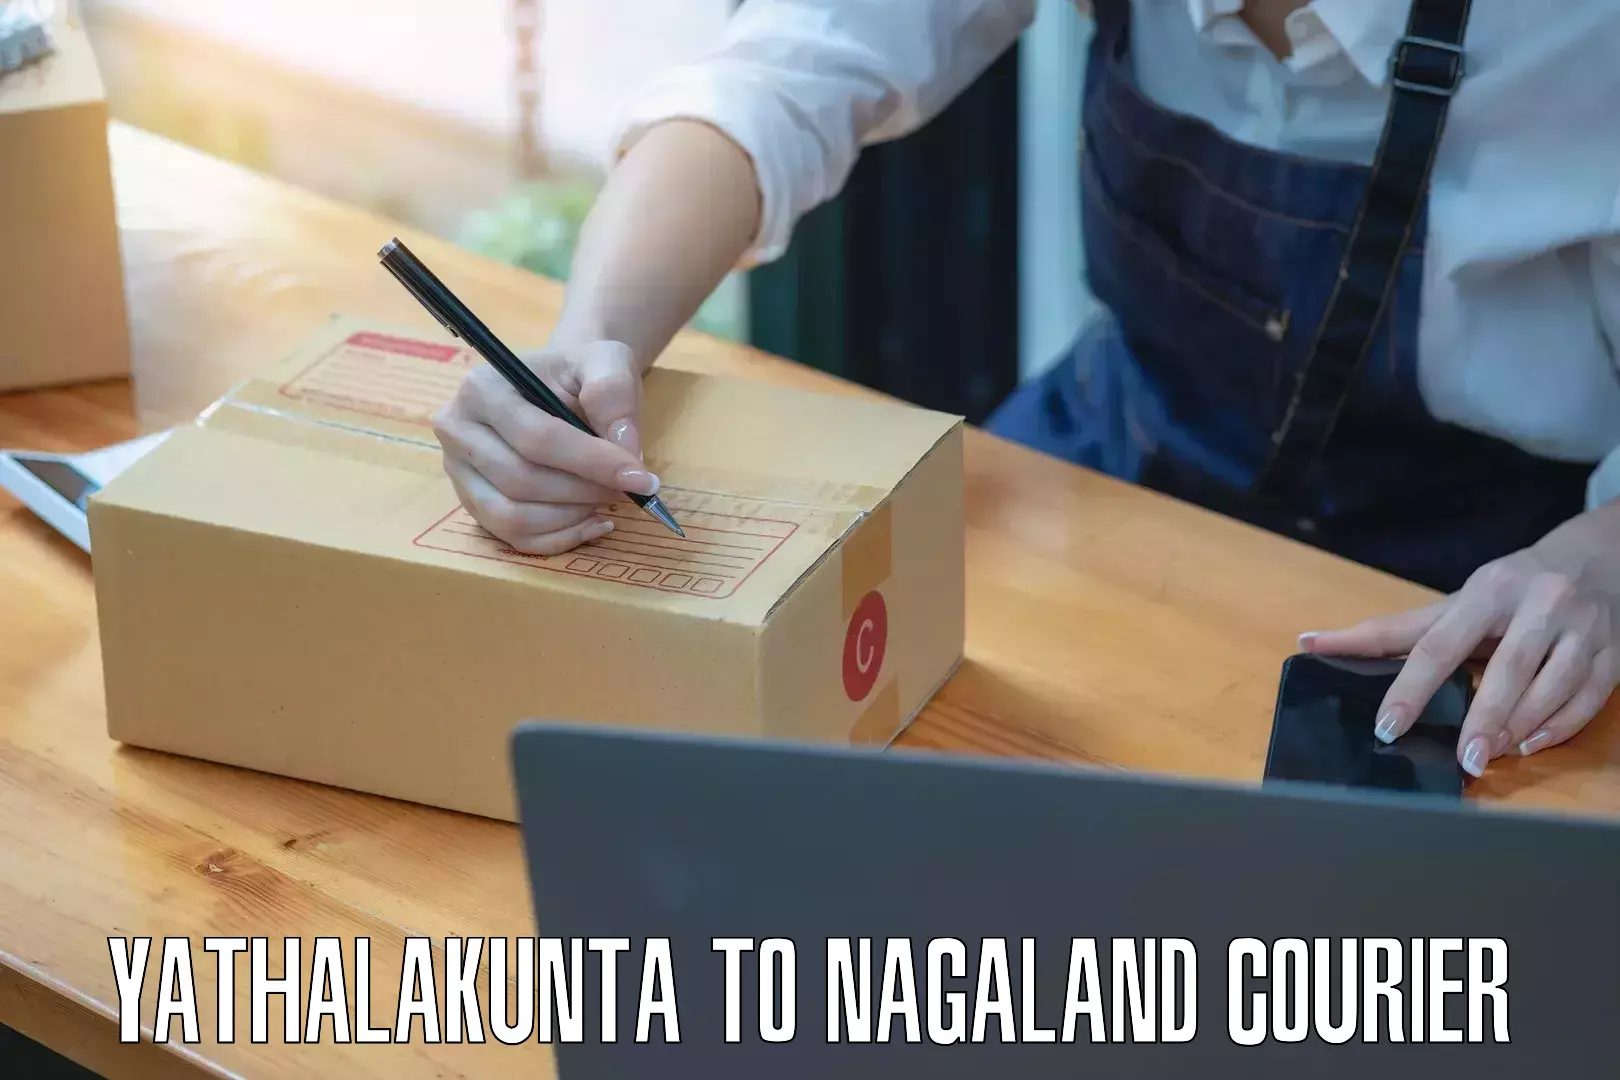 Courier service booking Yathalakunta to NIT Nagaland